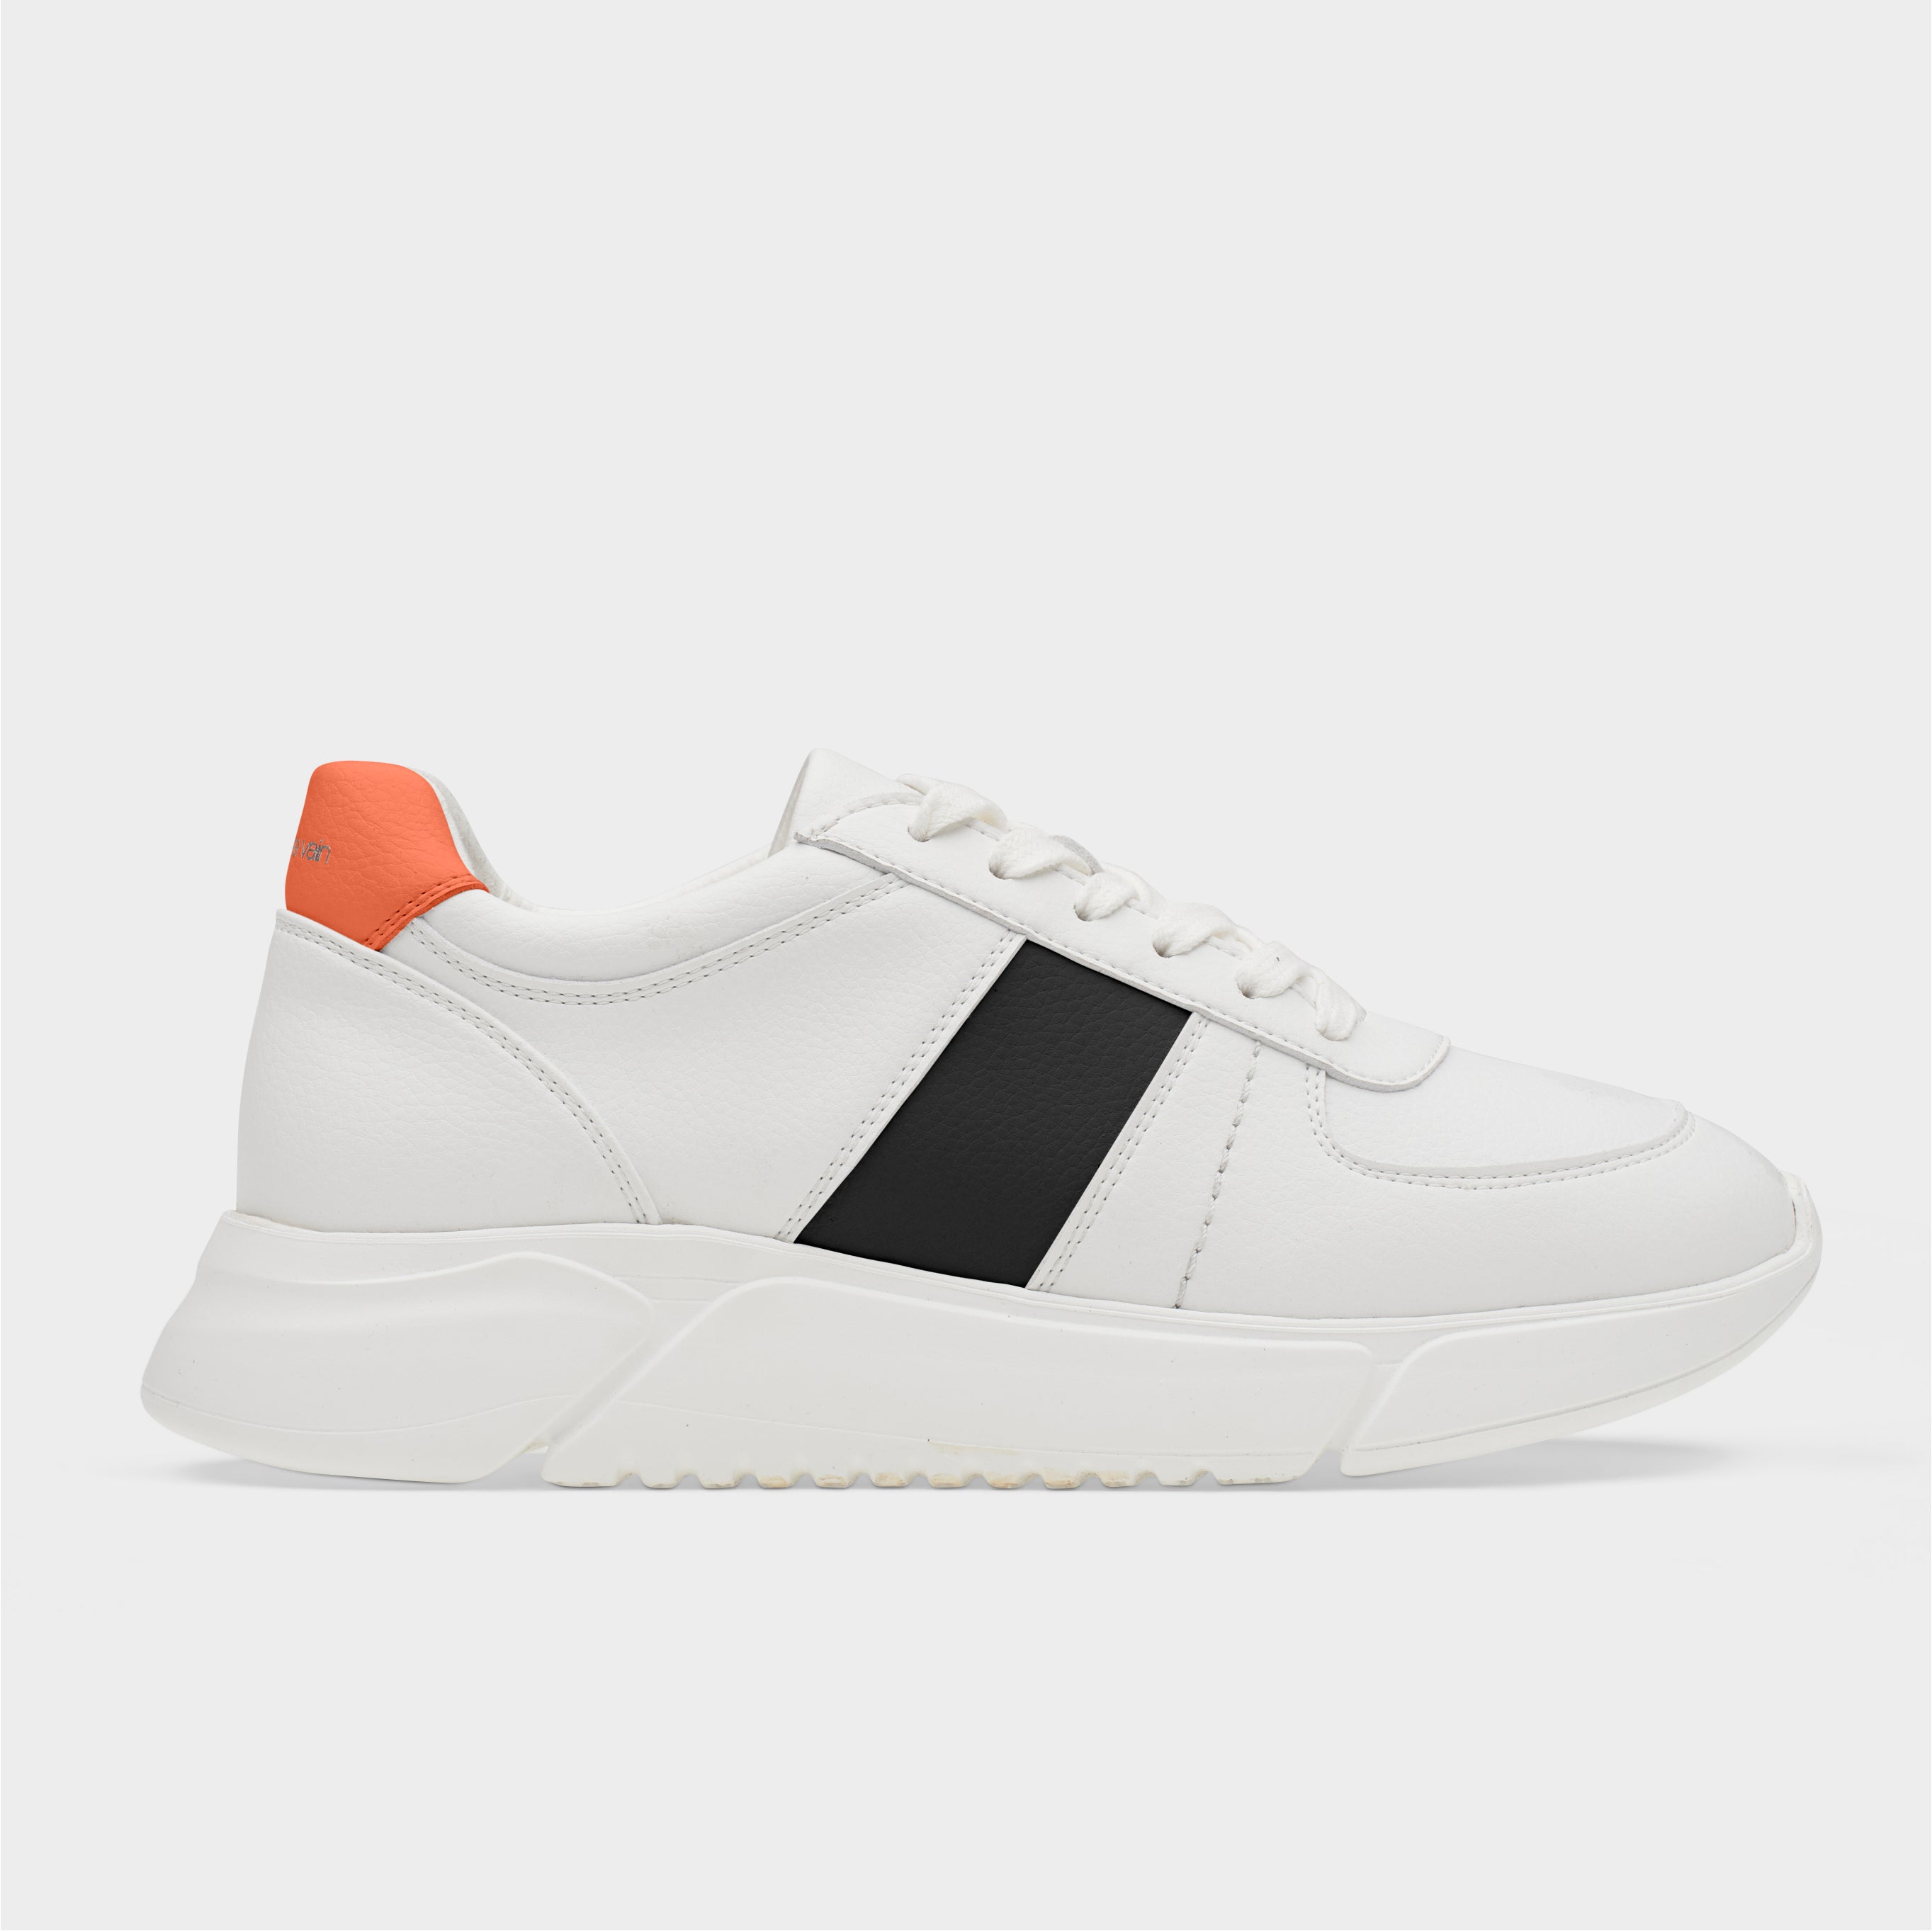 Challenge V3 Sustainable Sneaker - White/Organge/Black